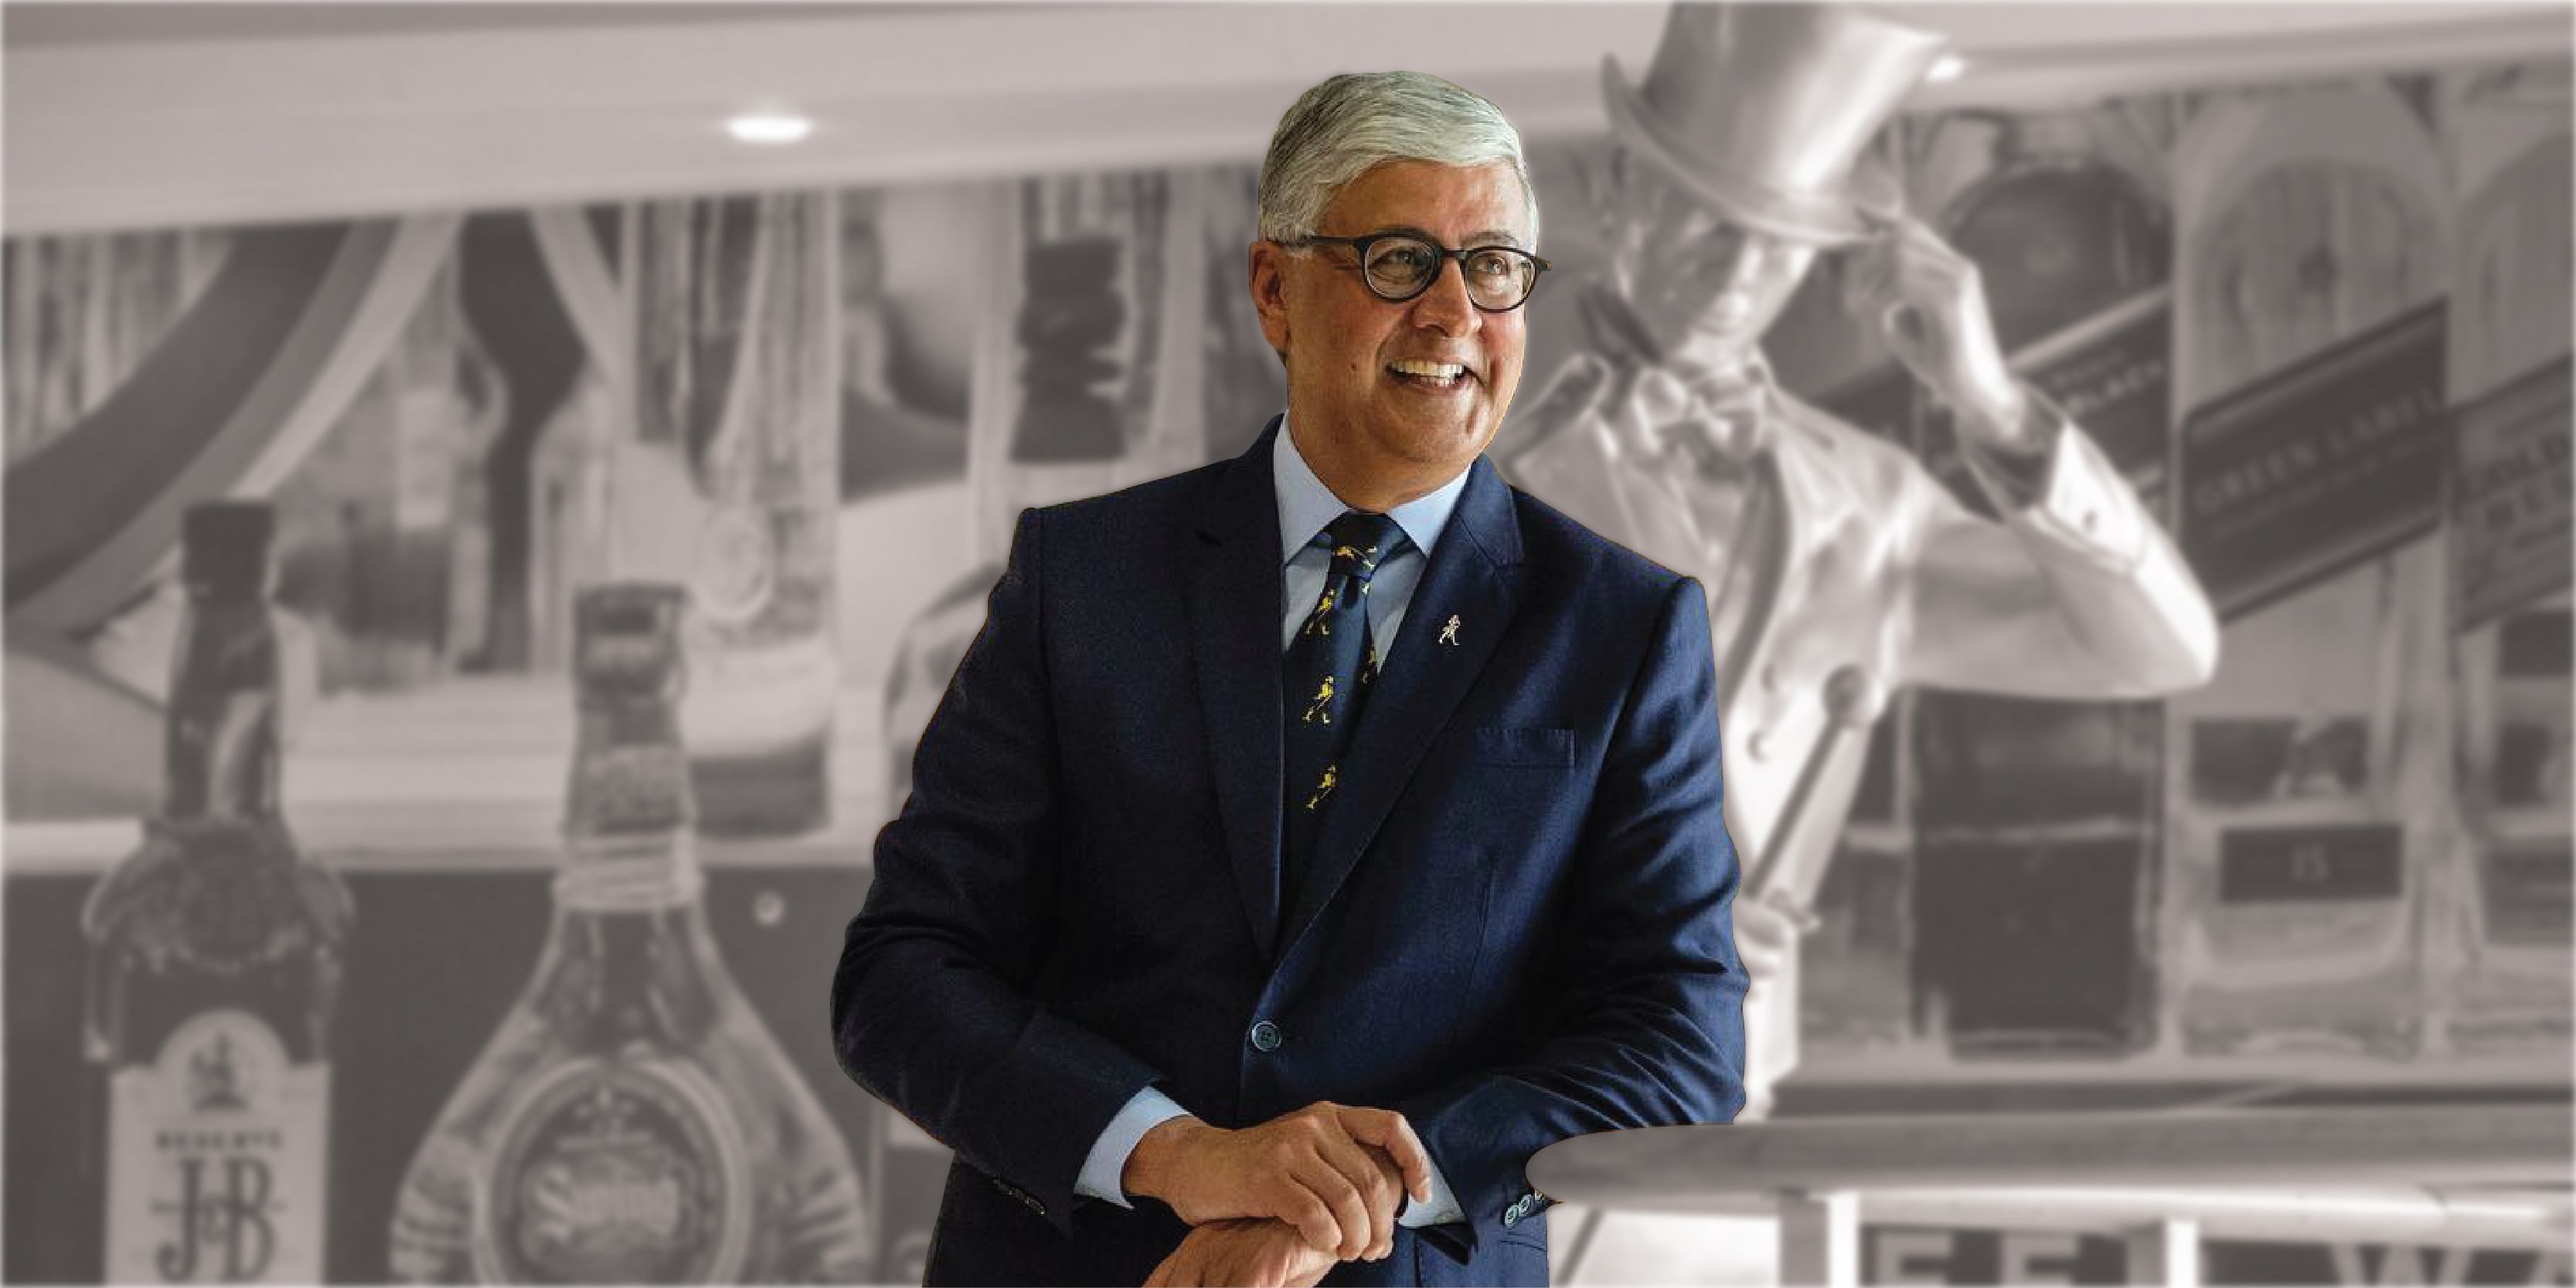 Ivan Menezes, India-born CEO of Diageo, passes away